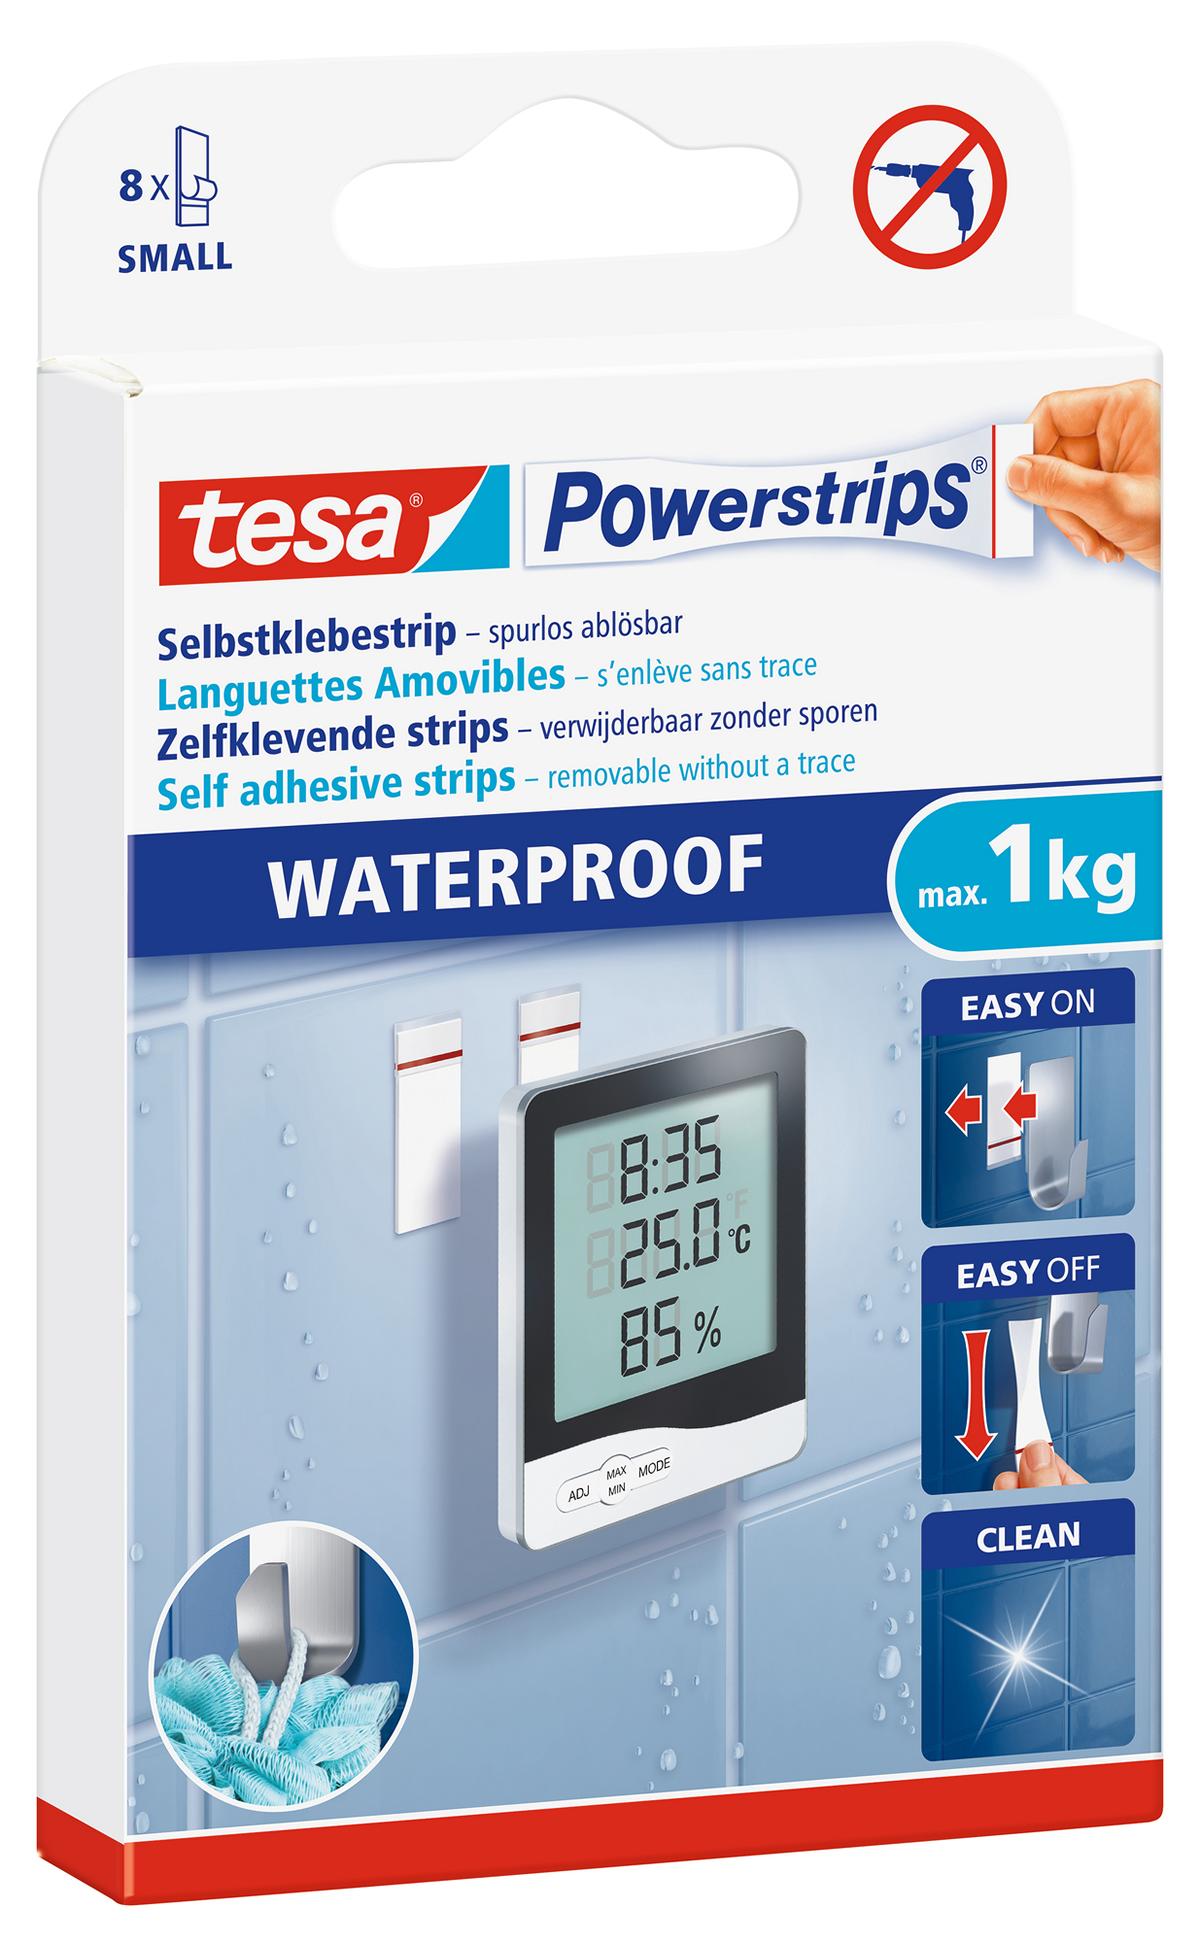 tesa Powerstrips Selbstklebestrip Waterproof Small